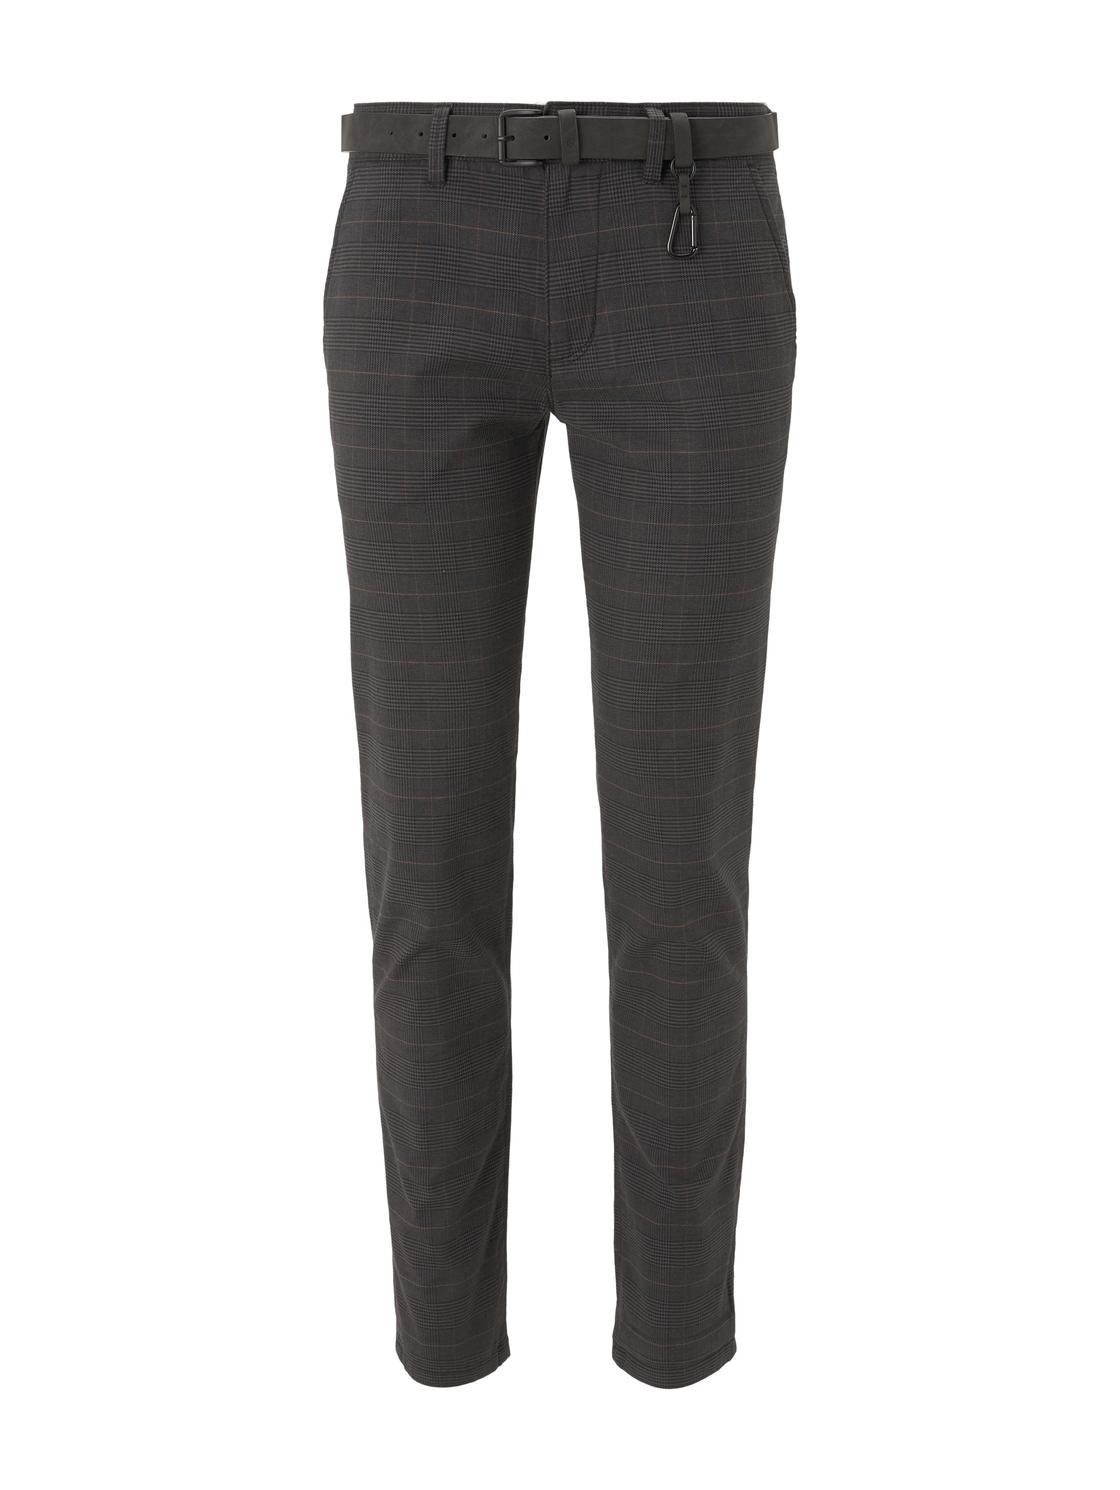 Тканевые брюки TOM TAILOR Denim Stoff/Chino Chino mit Gürtel regular/straight, серый худи tom tailor размер xl серый